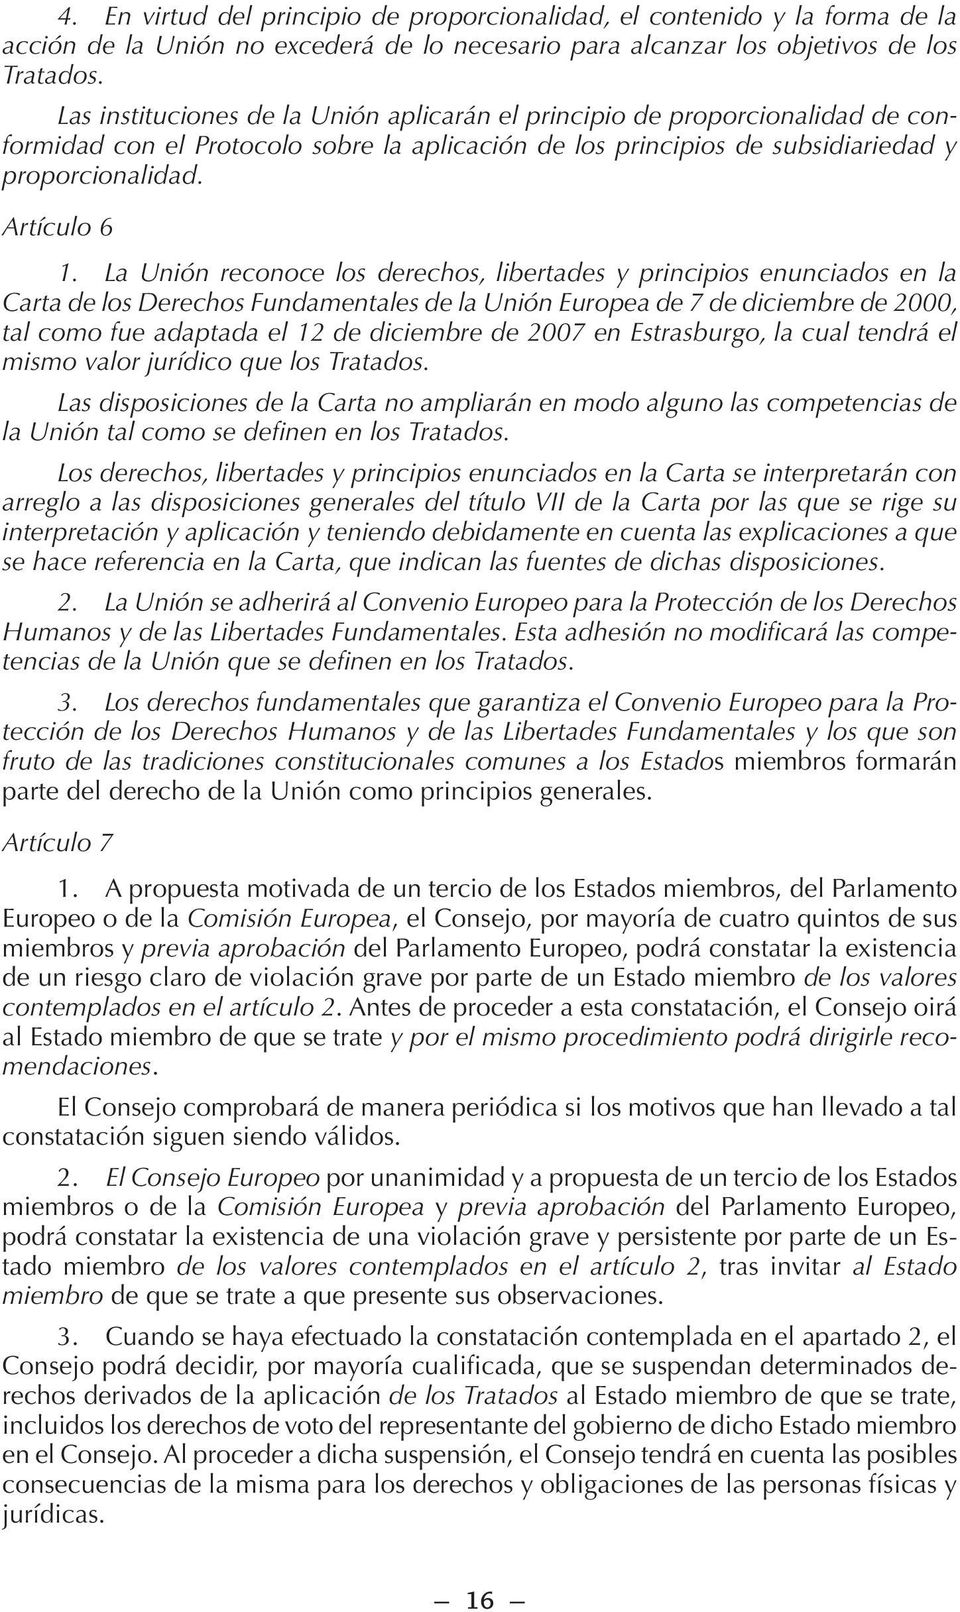 La Unión reconoce los derechos, libertades y principios enunciados en la Carta de los Derechos Fundamentales de la Unión Europea de 7 de diciembre de 2000, tal como fue adaptada el 12 de diciembre de